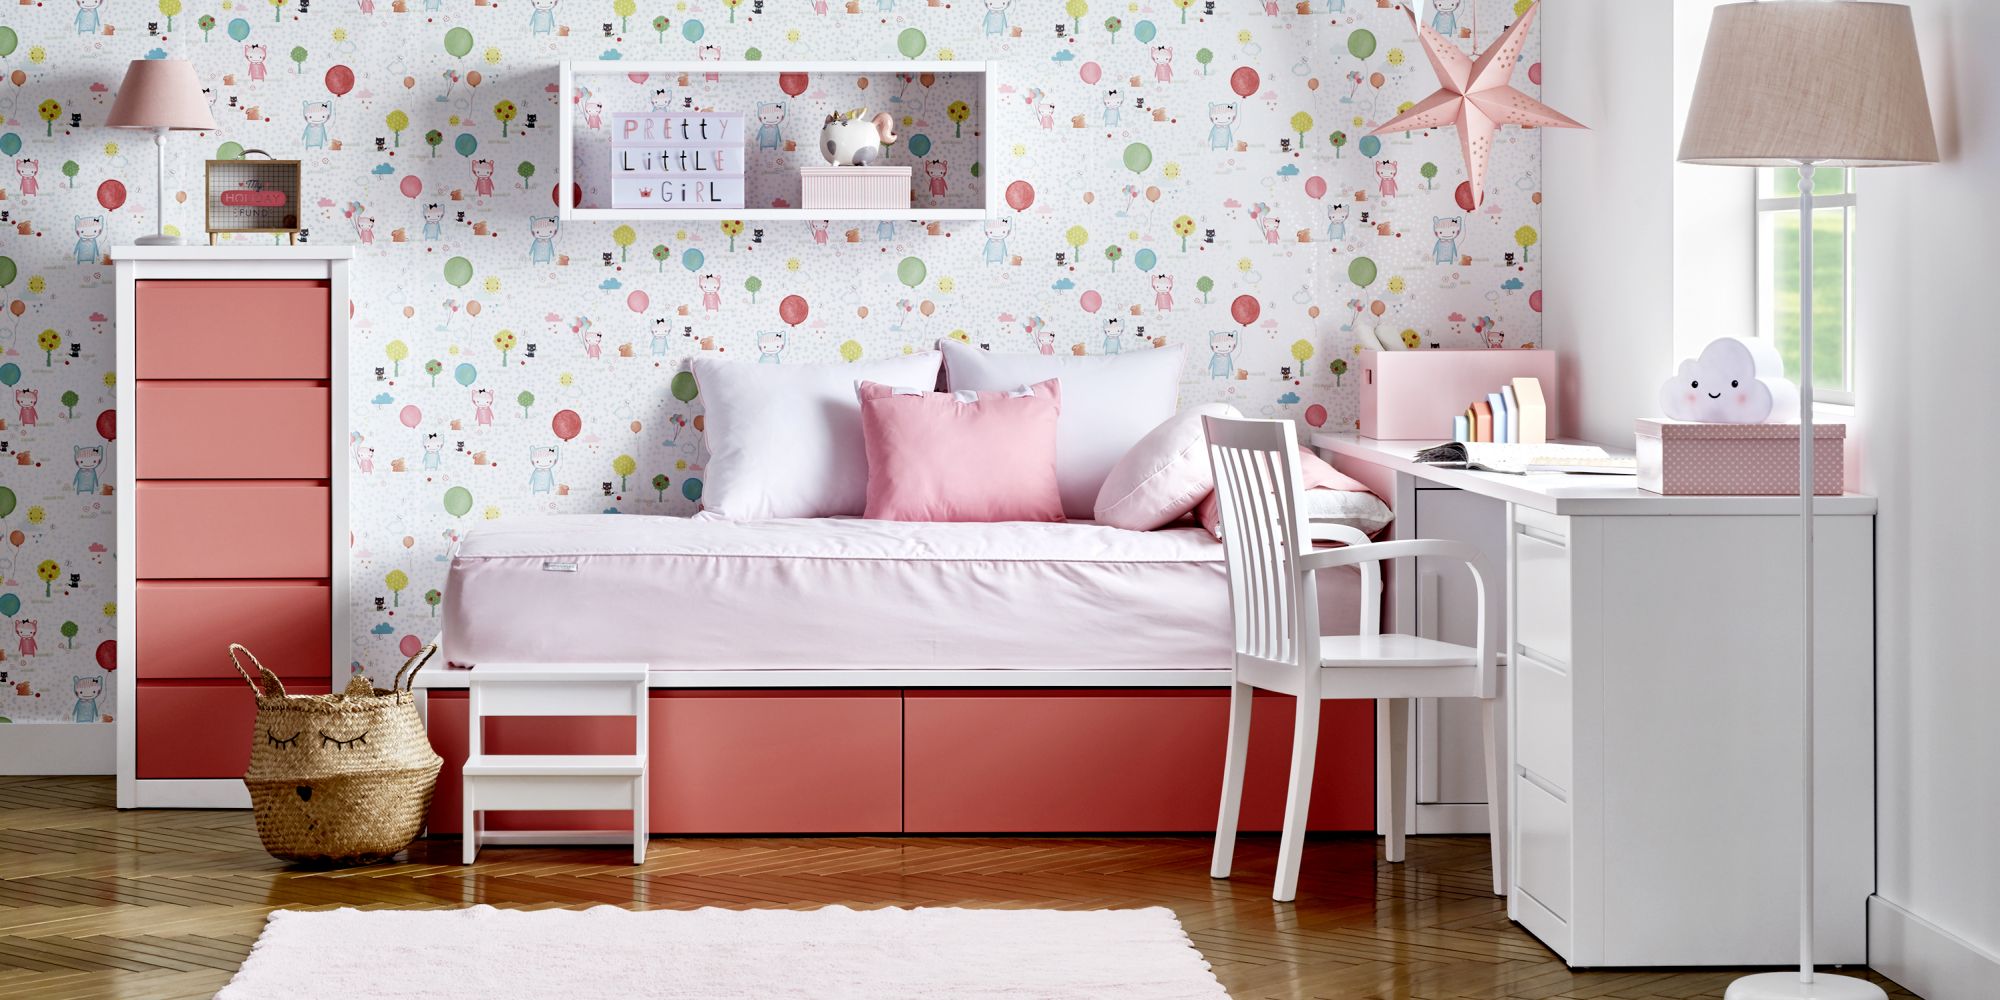 Habitacion muebles blancos y rosa tatami nido